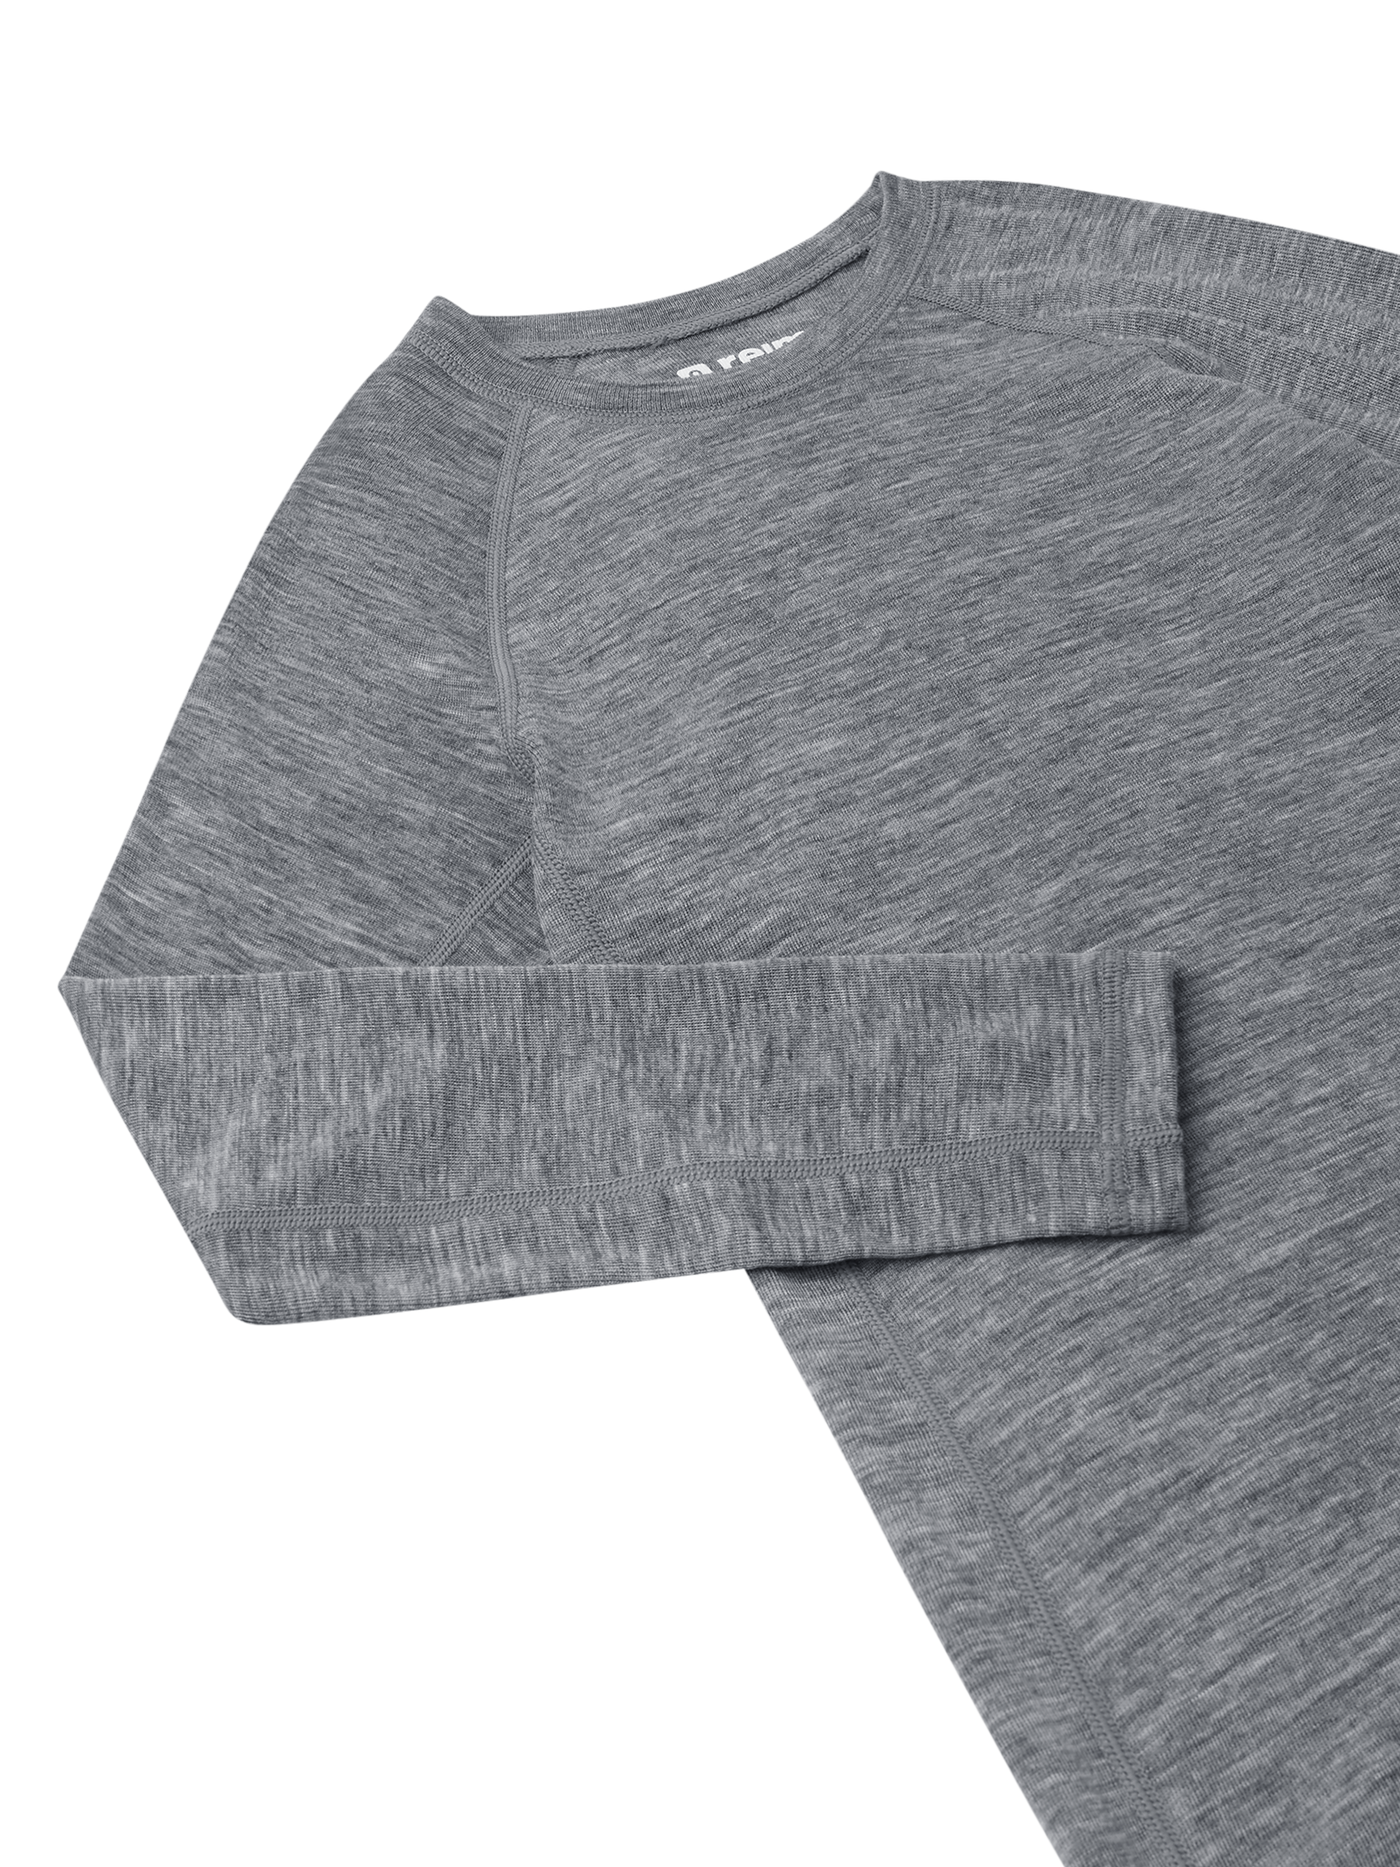 Reiman Thermal Set Kinsei -merinovillasetin harmaa paita lähikuvassa